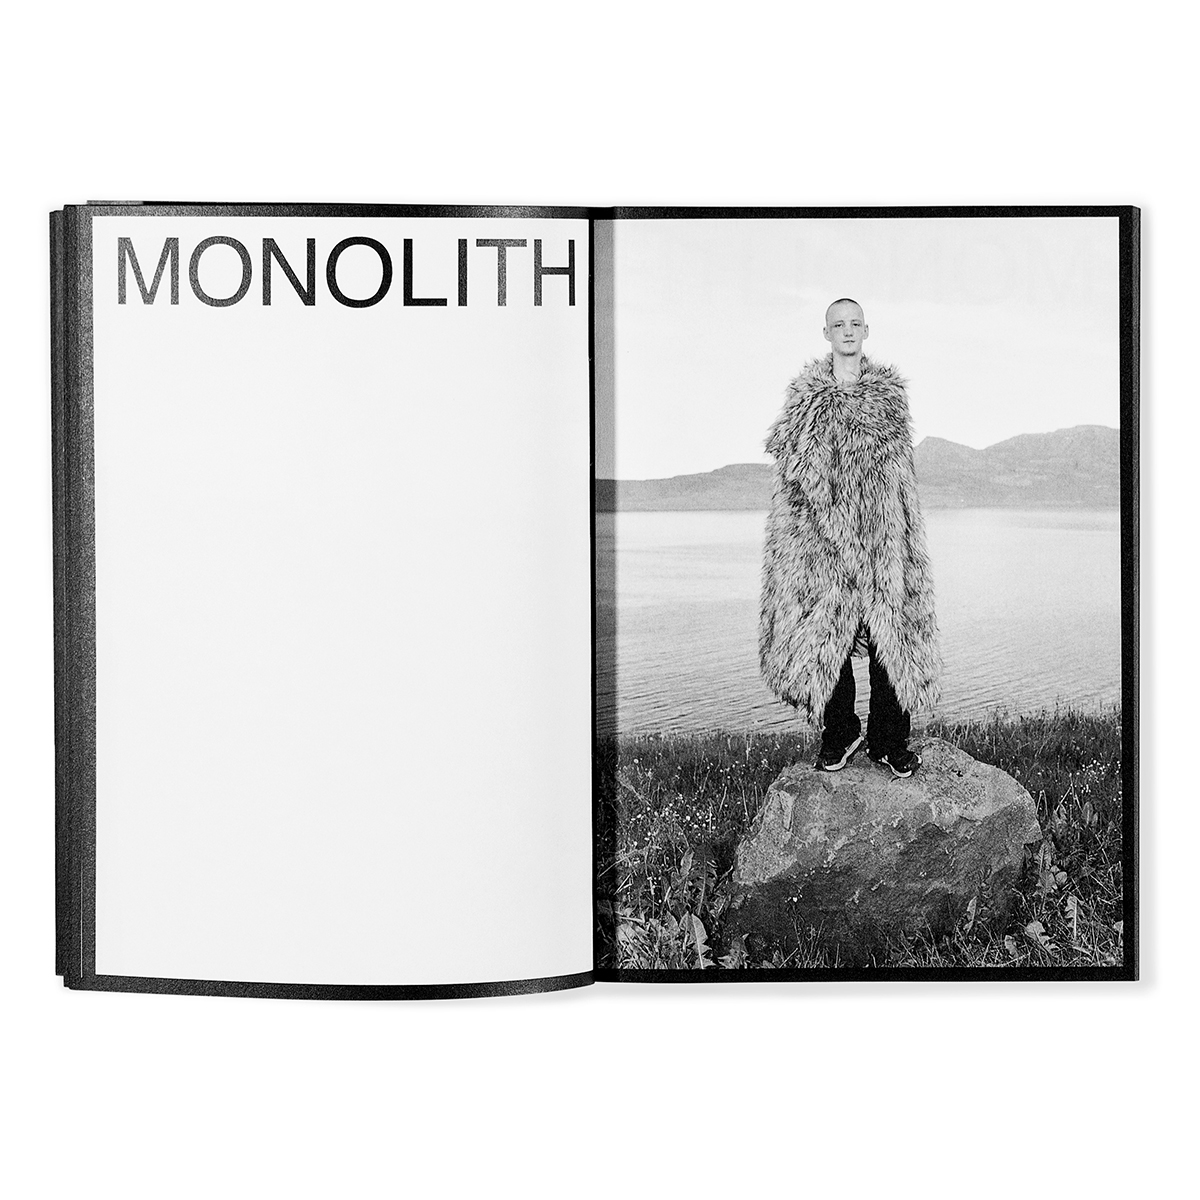 Monolith - Attilio Solzi